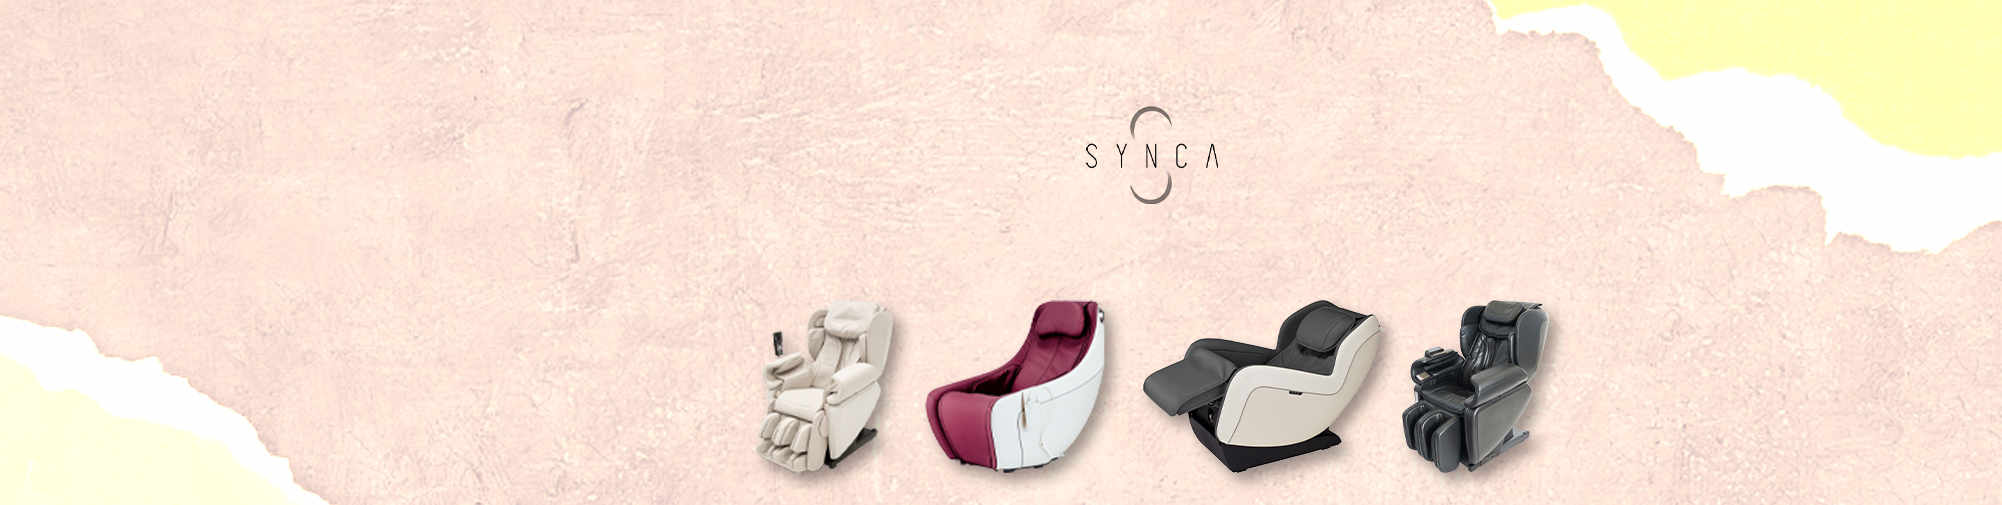 SYNCA - відзначений нагородами велнес-виробник | Світ масажних крісел